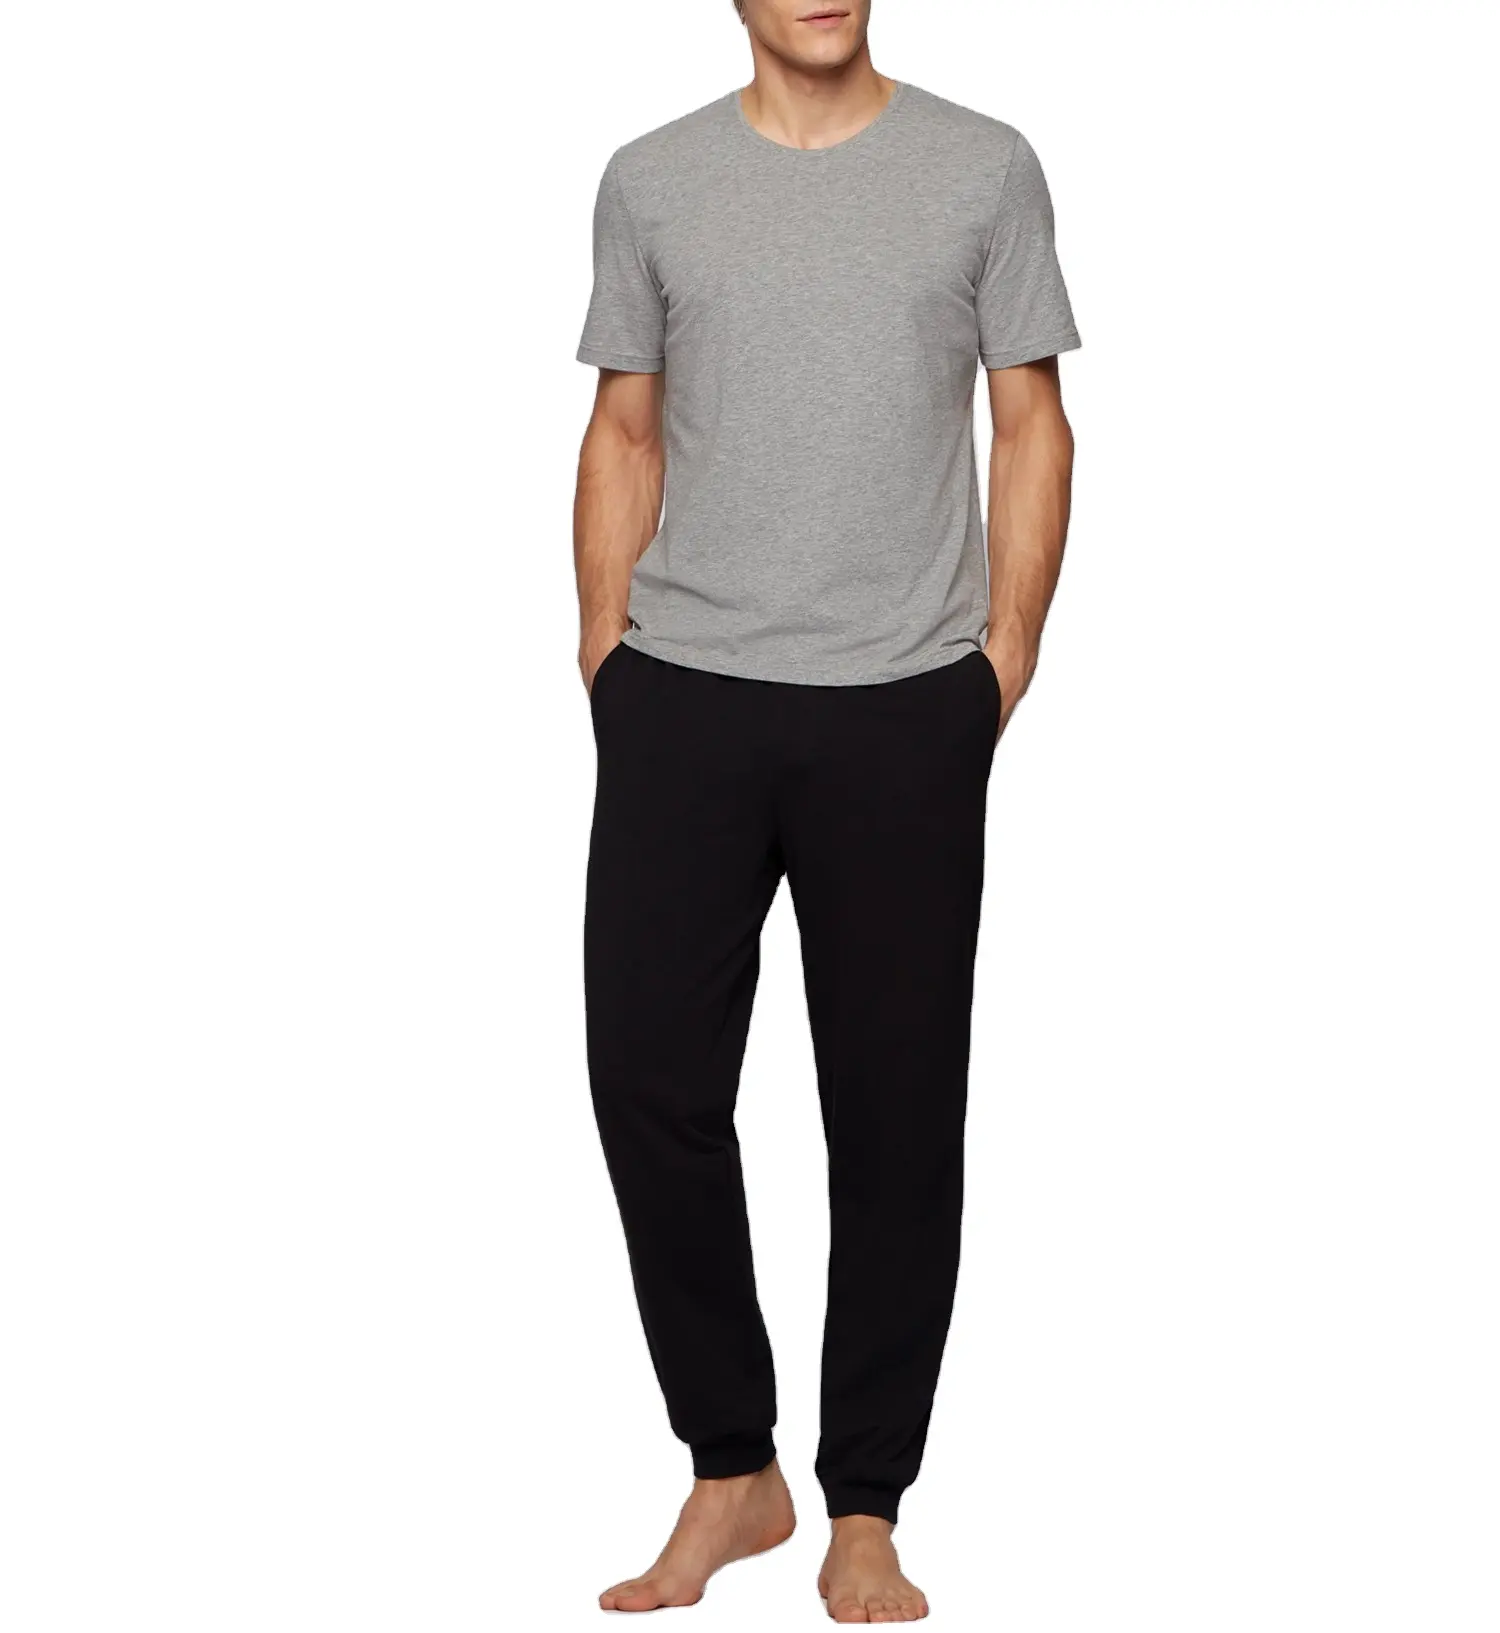 Customized cotton Solid Color Two Piece Pajamas, Long Sleeve Loungewear Pyjamas Man's Sleepwear